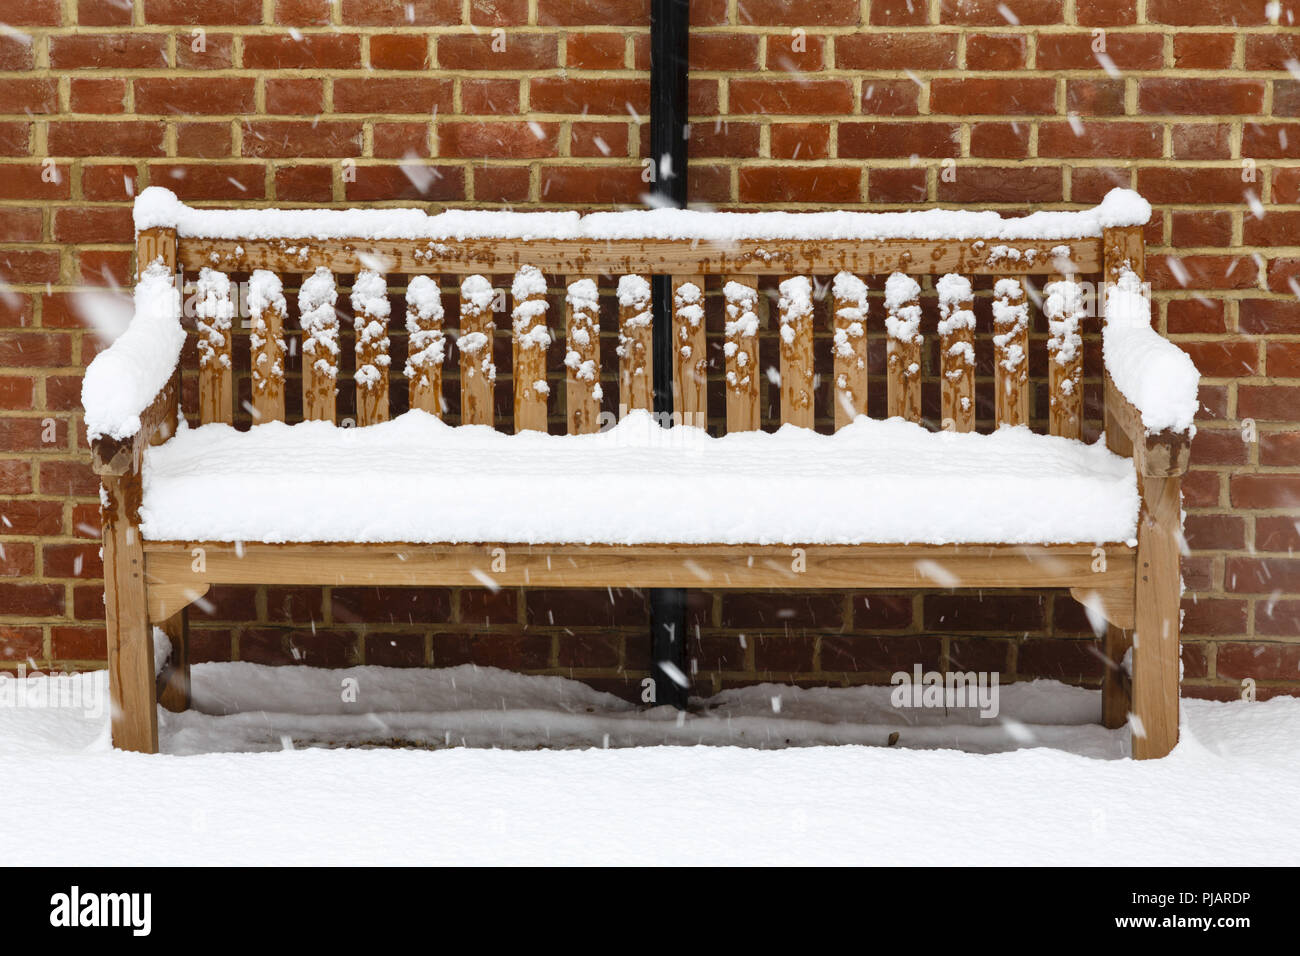 Banc de jardin en bois recouvert de neige contre un mur de briques Banque D'Images